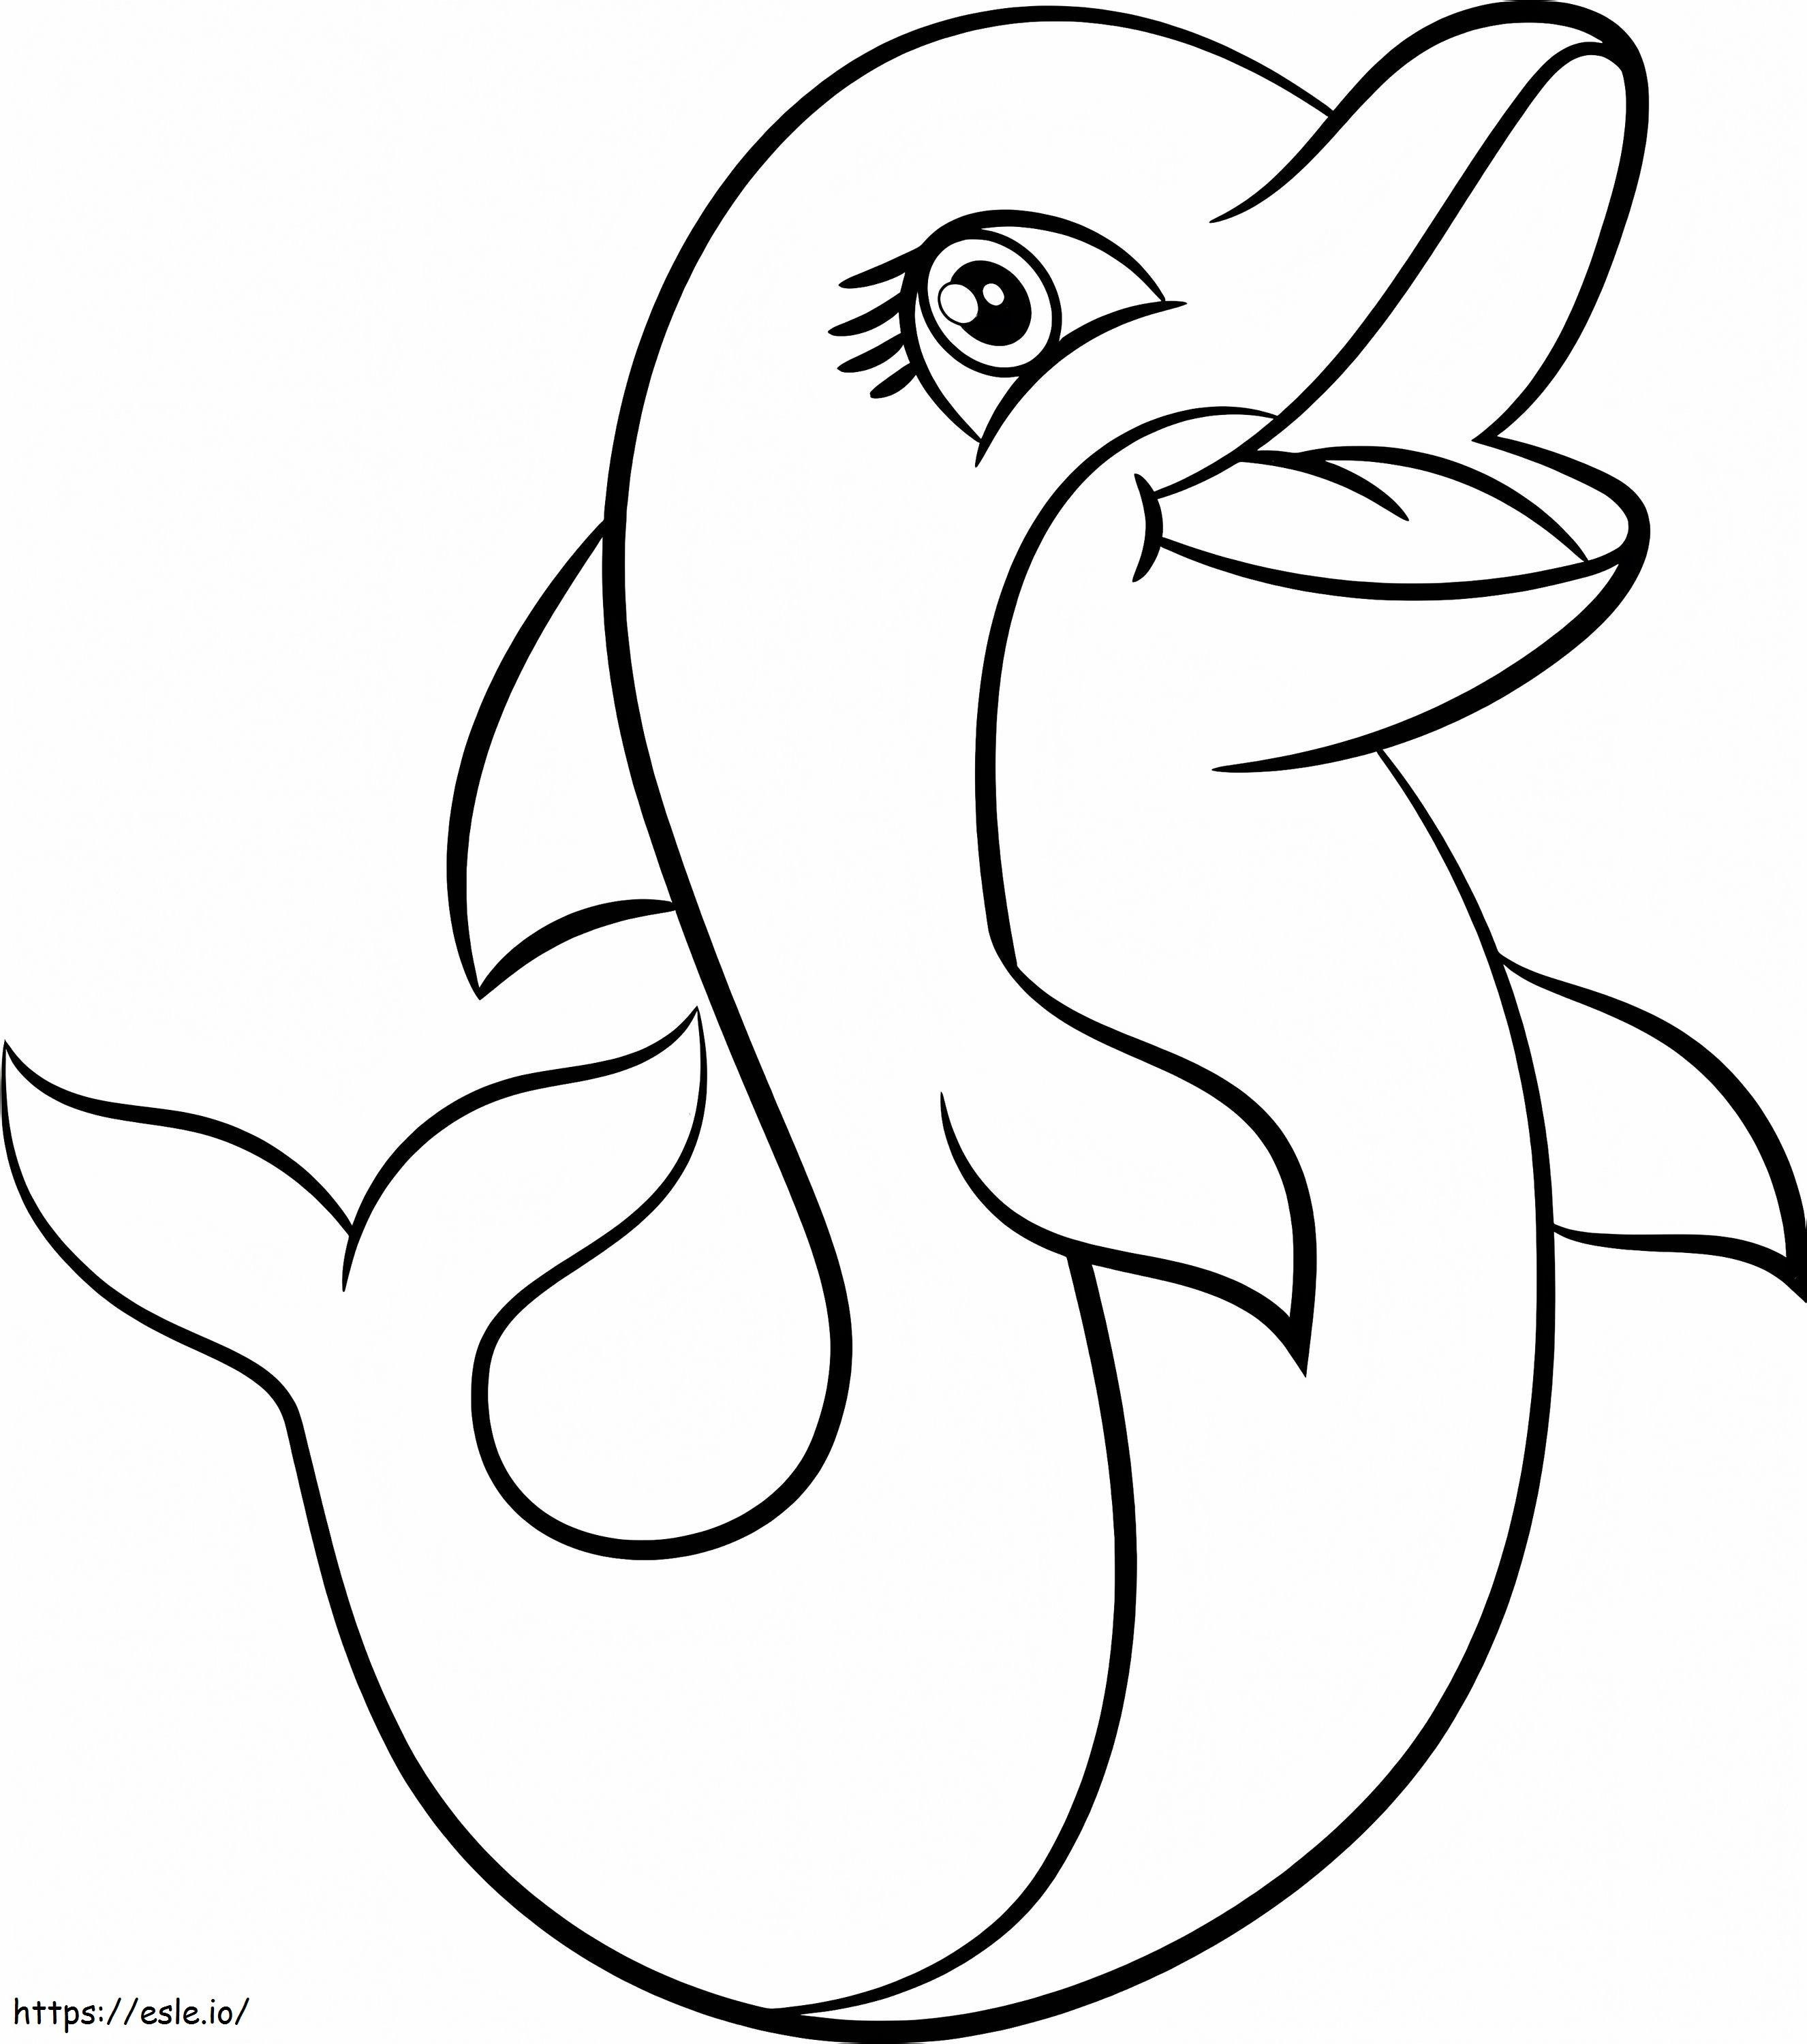 Coloriage Un dauphin mignon à imprimer dessin